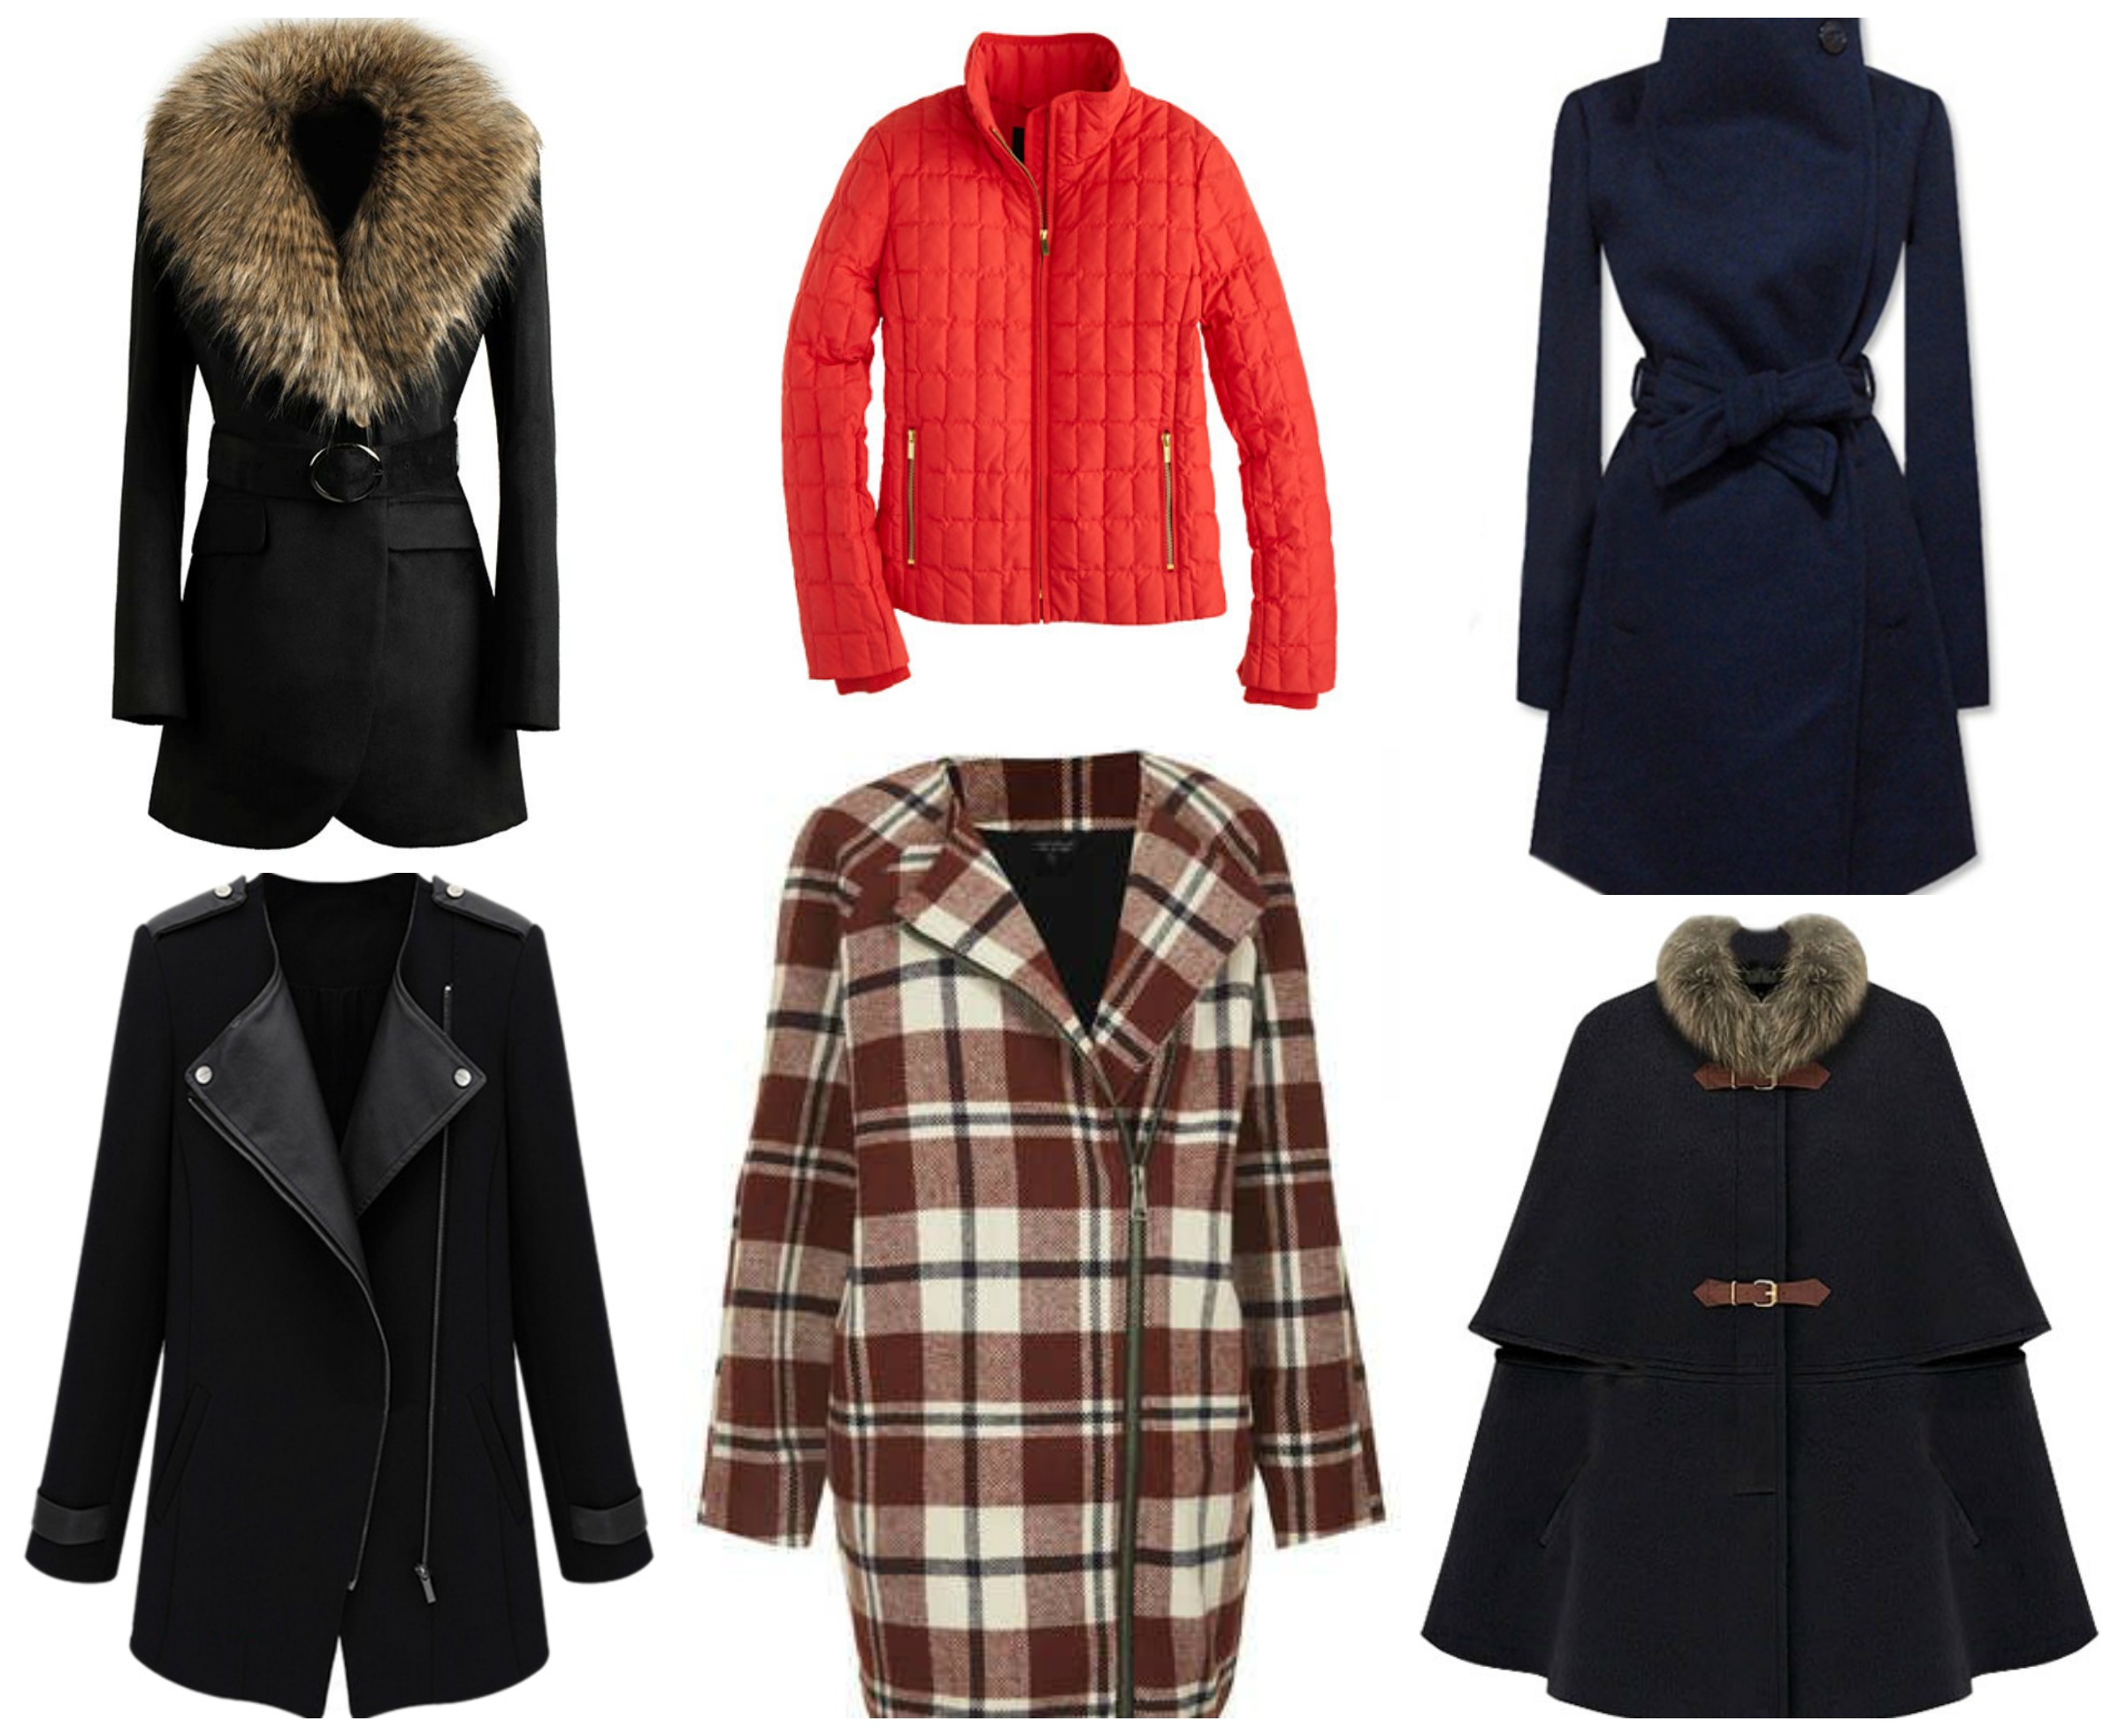 6 Fashionable Coats Under $200